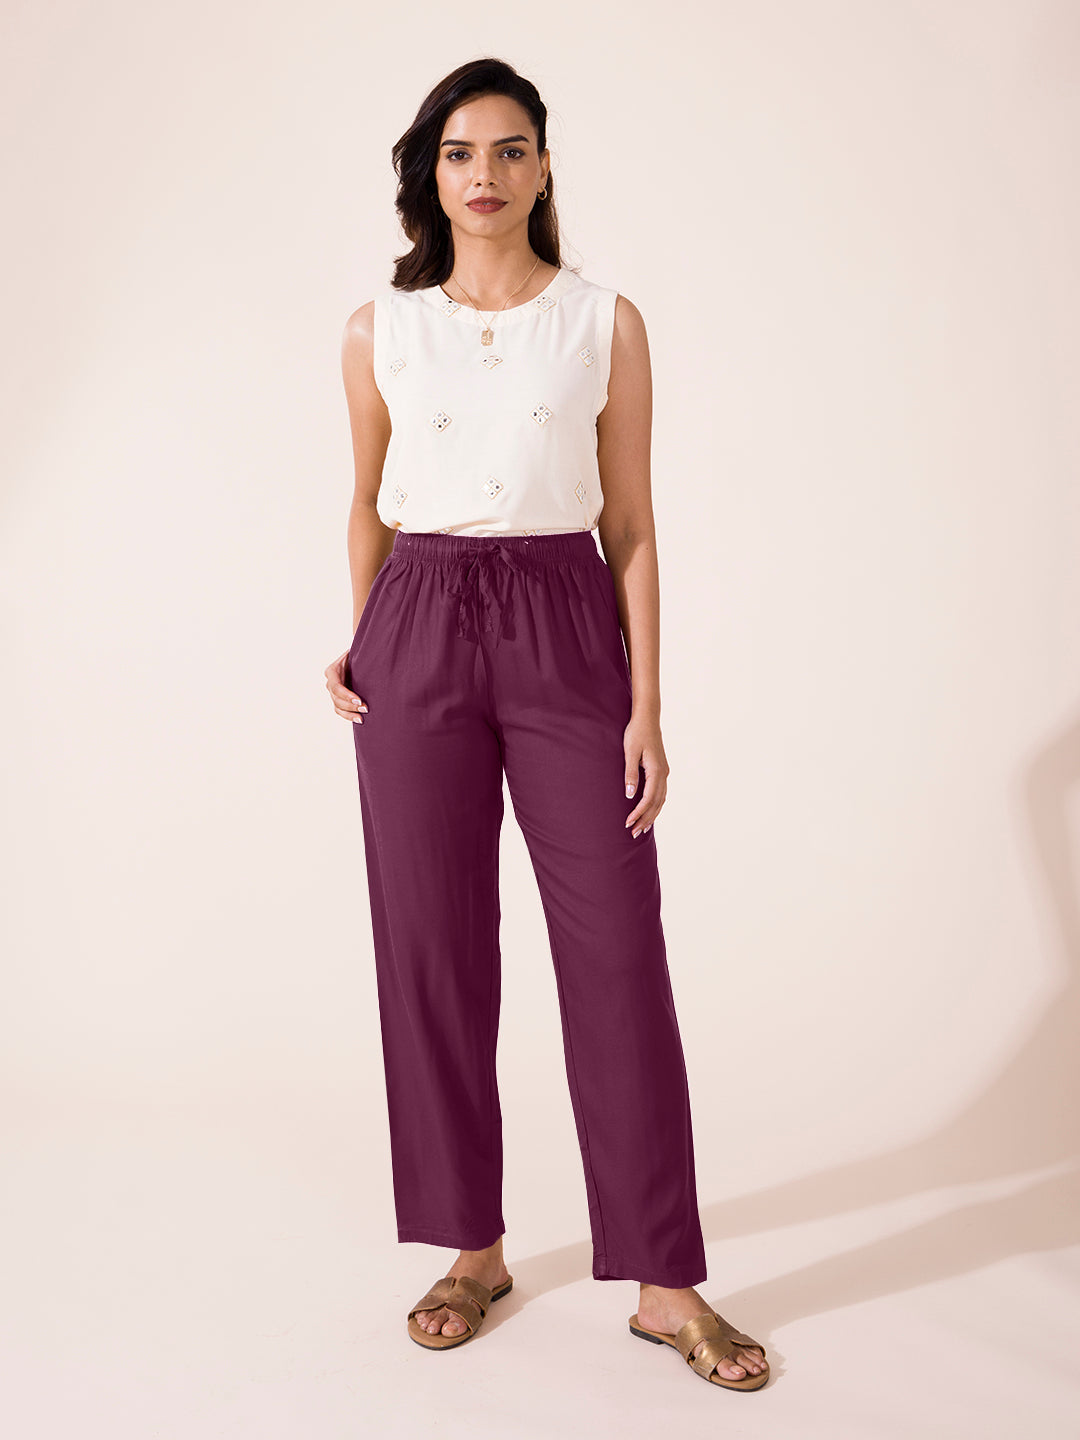 Buy Purple Pants Online in India at Best Price - Westside